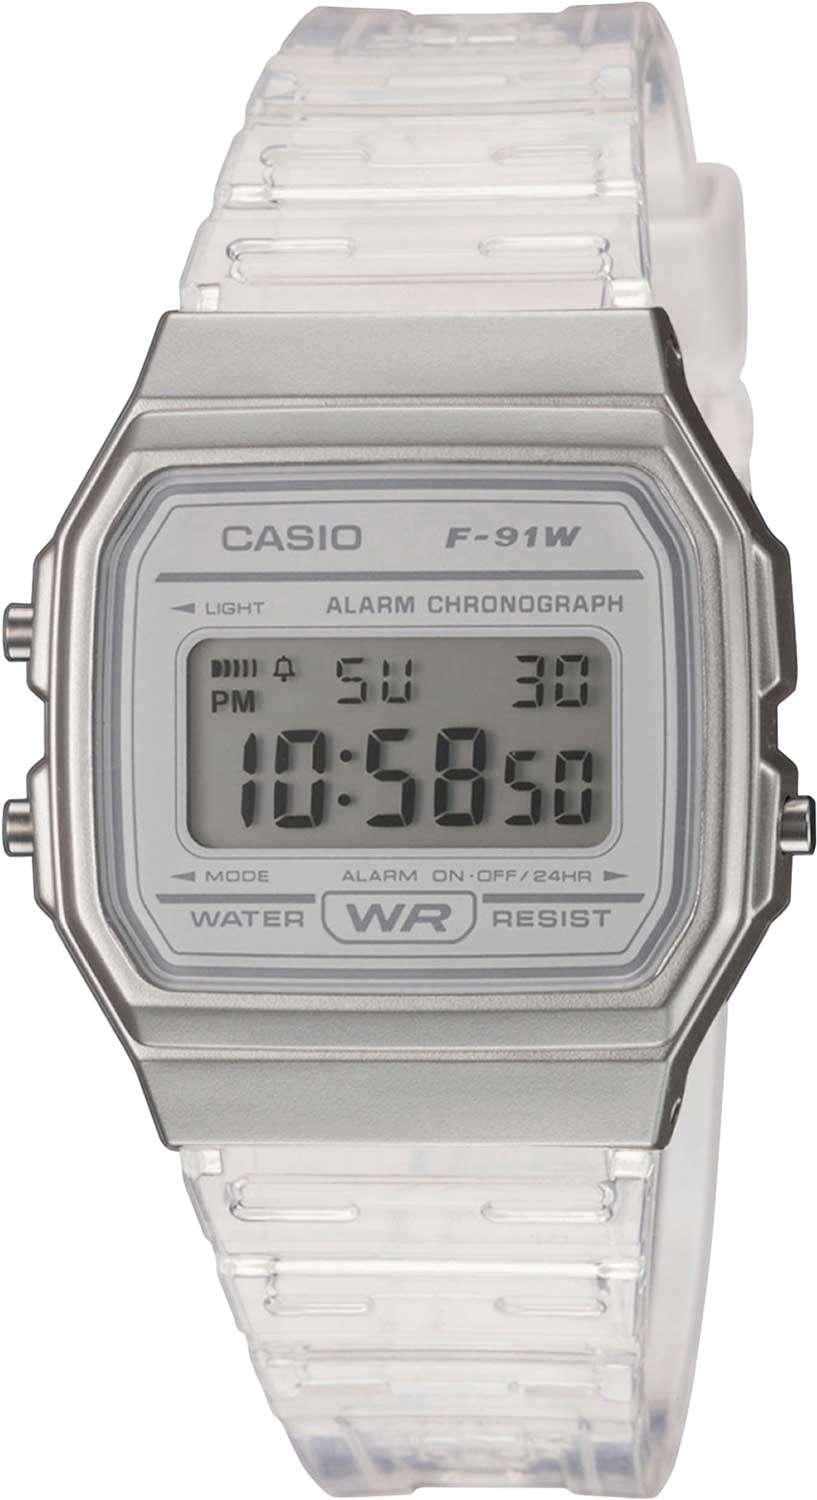 Японские наручные часы Casio Collection F-91WS-7EF с хронографом